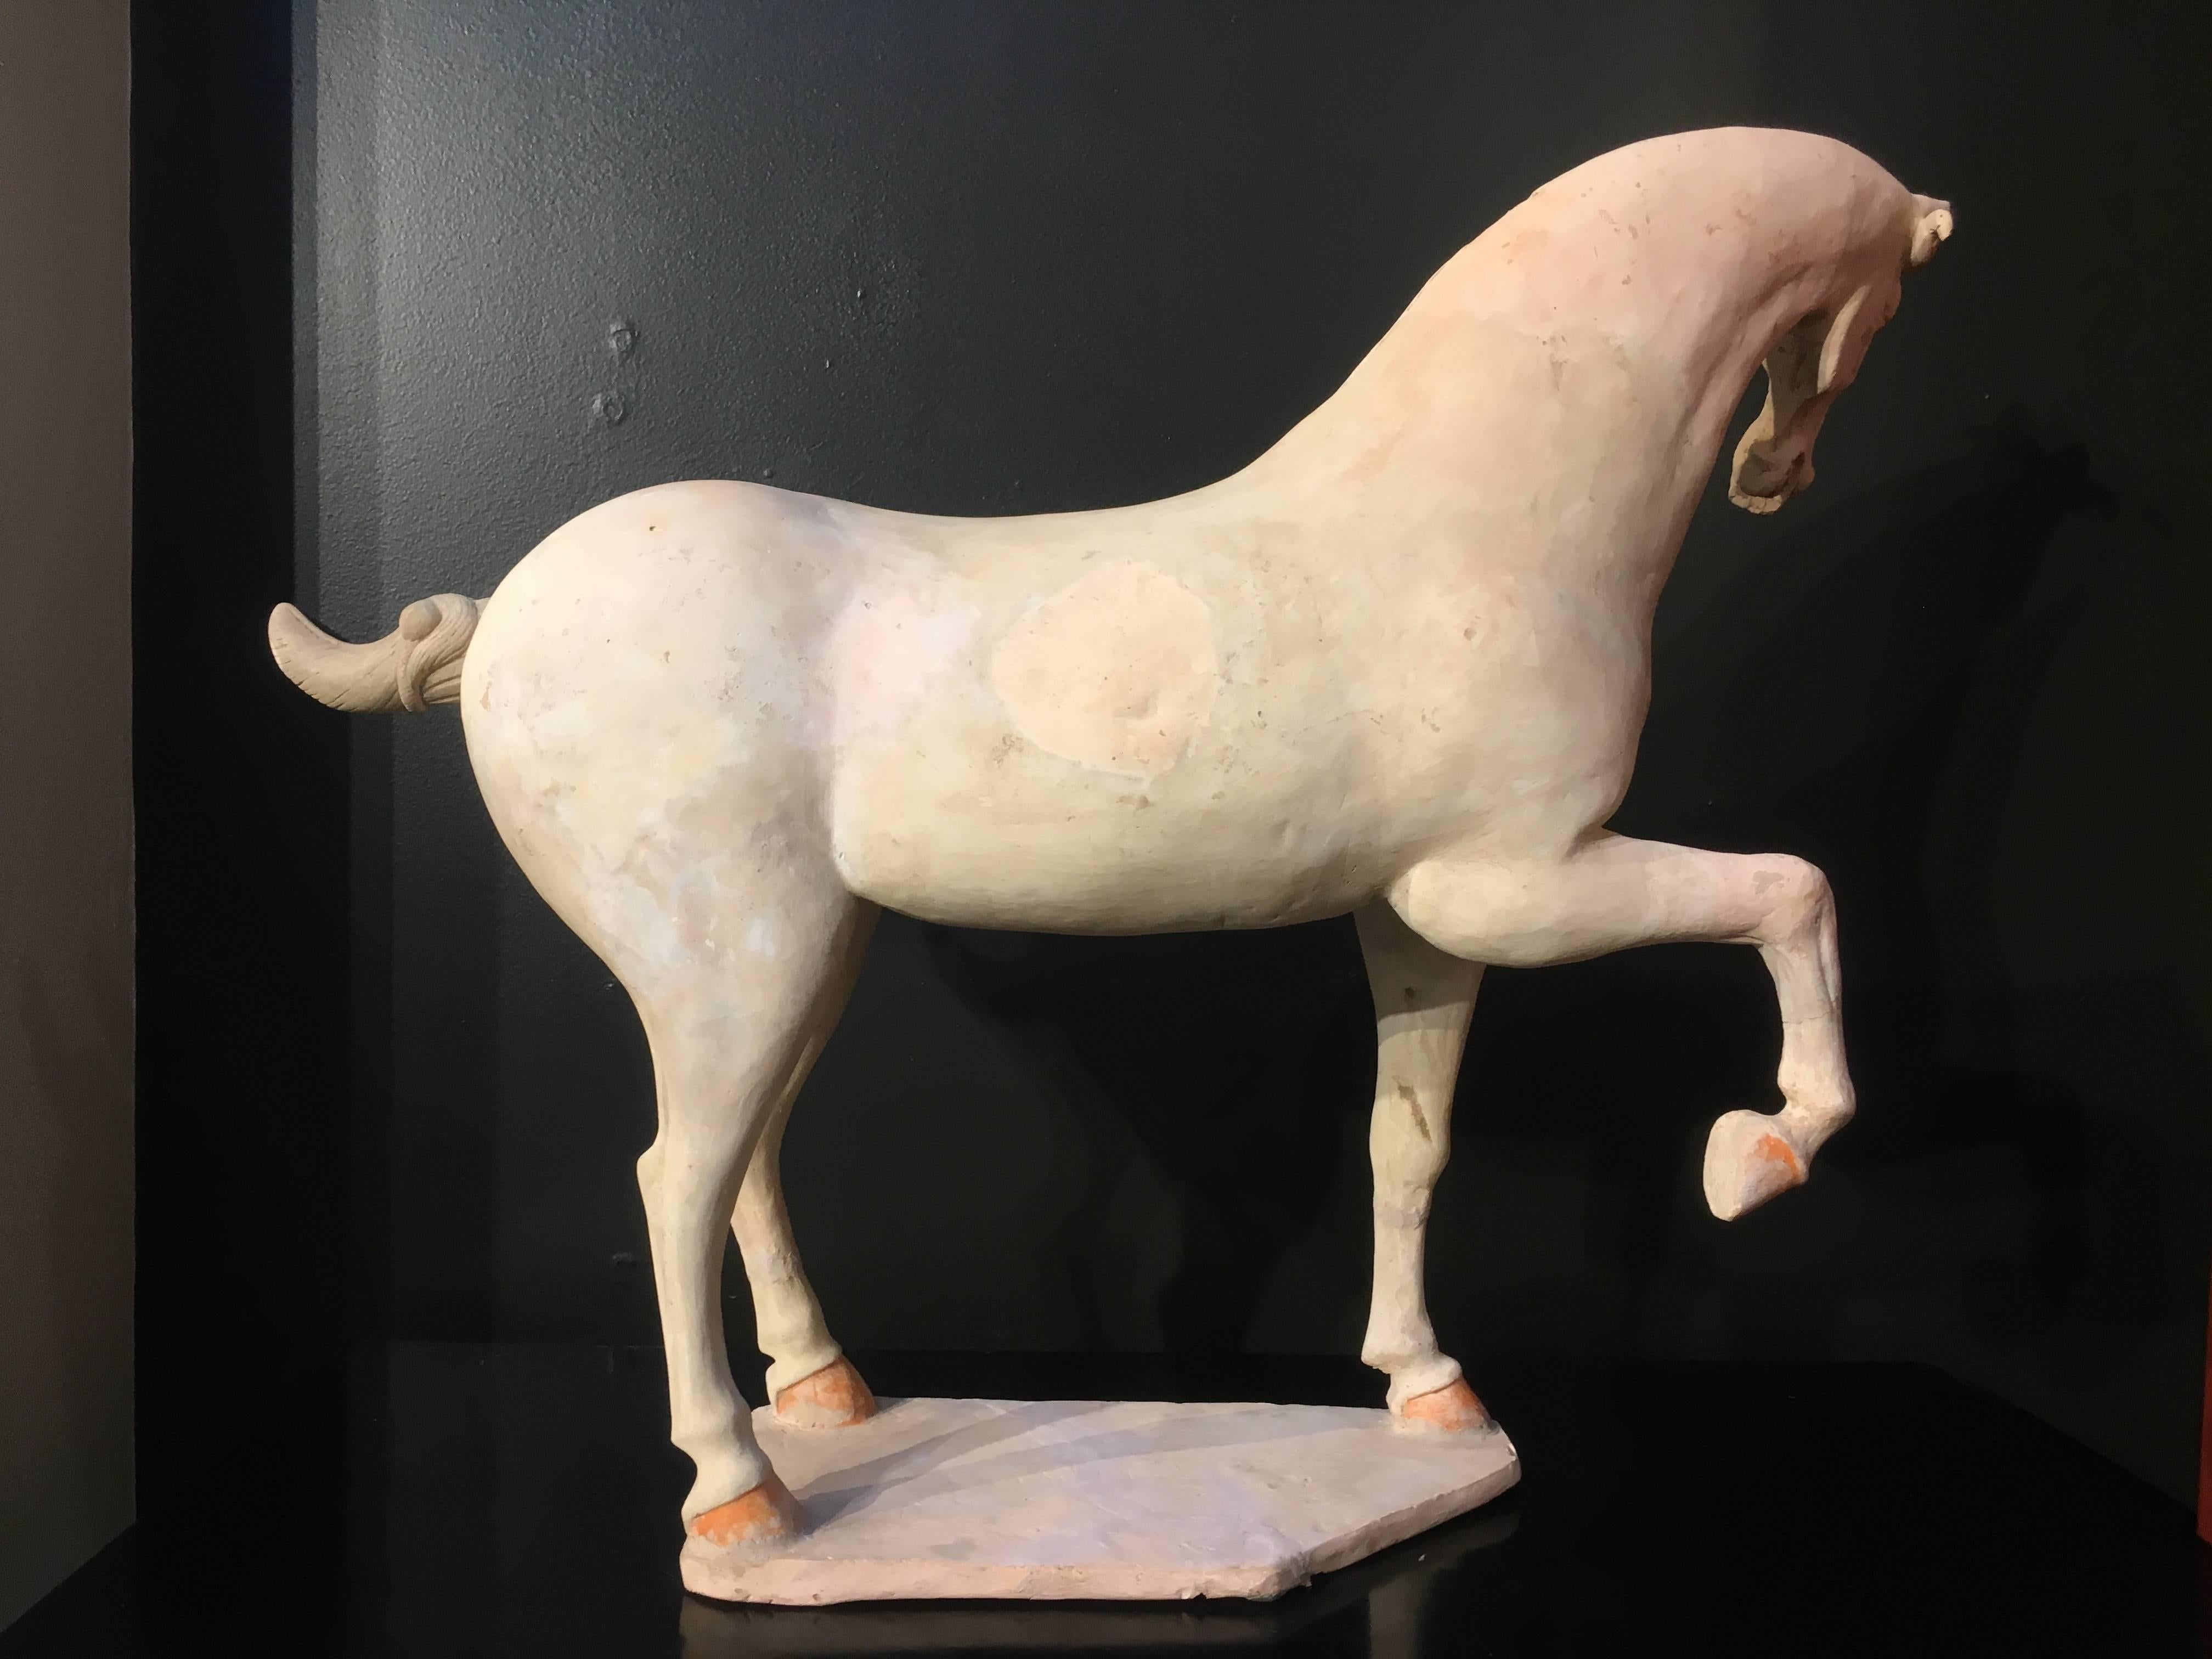 Magnifique et grand modèle du début de la dynastie Tang (618-906 AD) d'un cheval cabré ou dansant, vers le VIIe siècle.
L'animal majestueux est saisi en plein mouvement, une jambe levée, la tête gracieusement tournée, debout sur un socle. Le corps